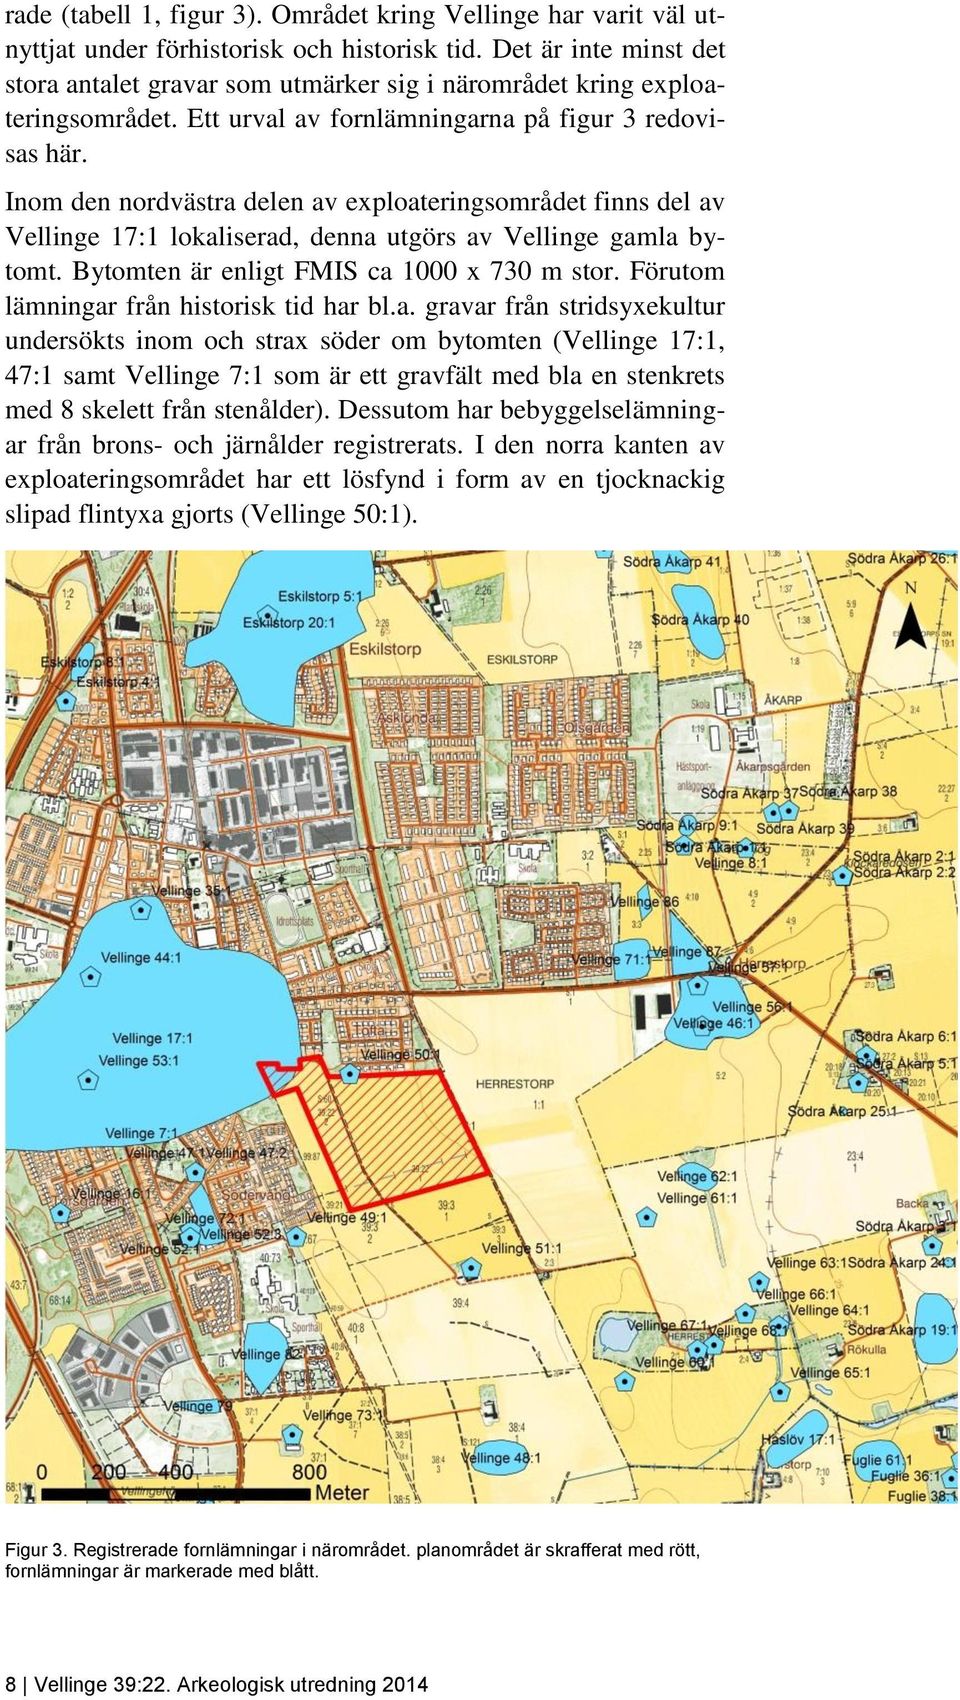 Inom den nordvästra delen av exploateringsområdet finns del av Vellinge 17:1 lokaliserad, denna utgörs av Vellinge gamla bytomt. Bytomten är enligt FMIS ca 1000 x 730 m stor.